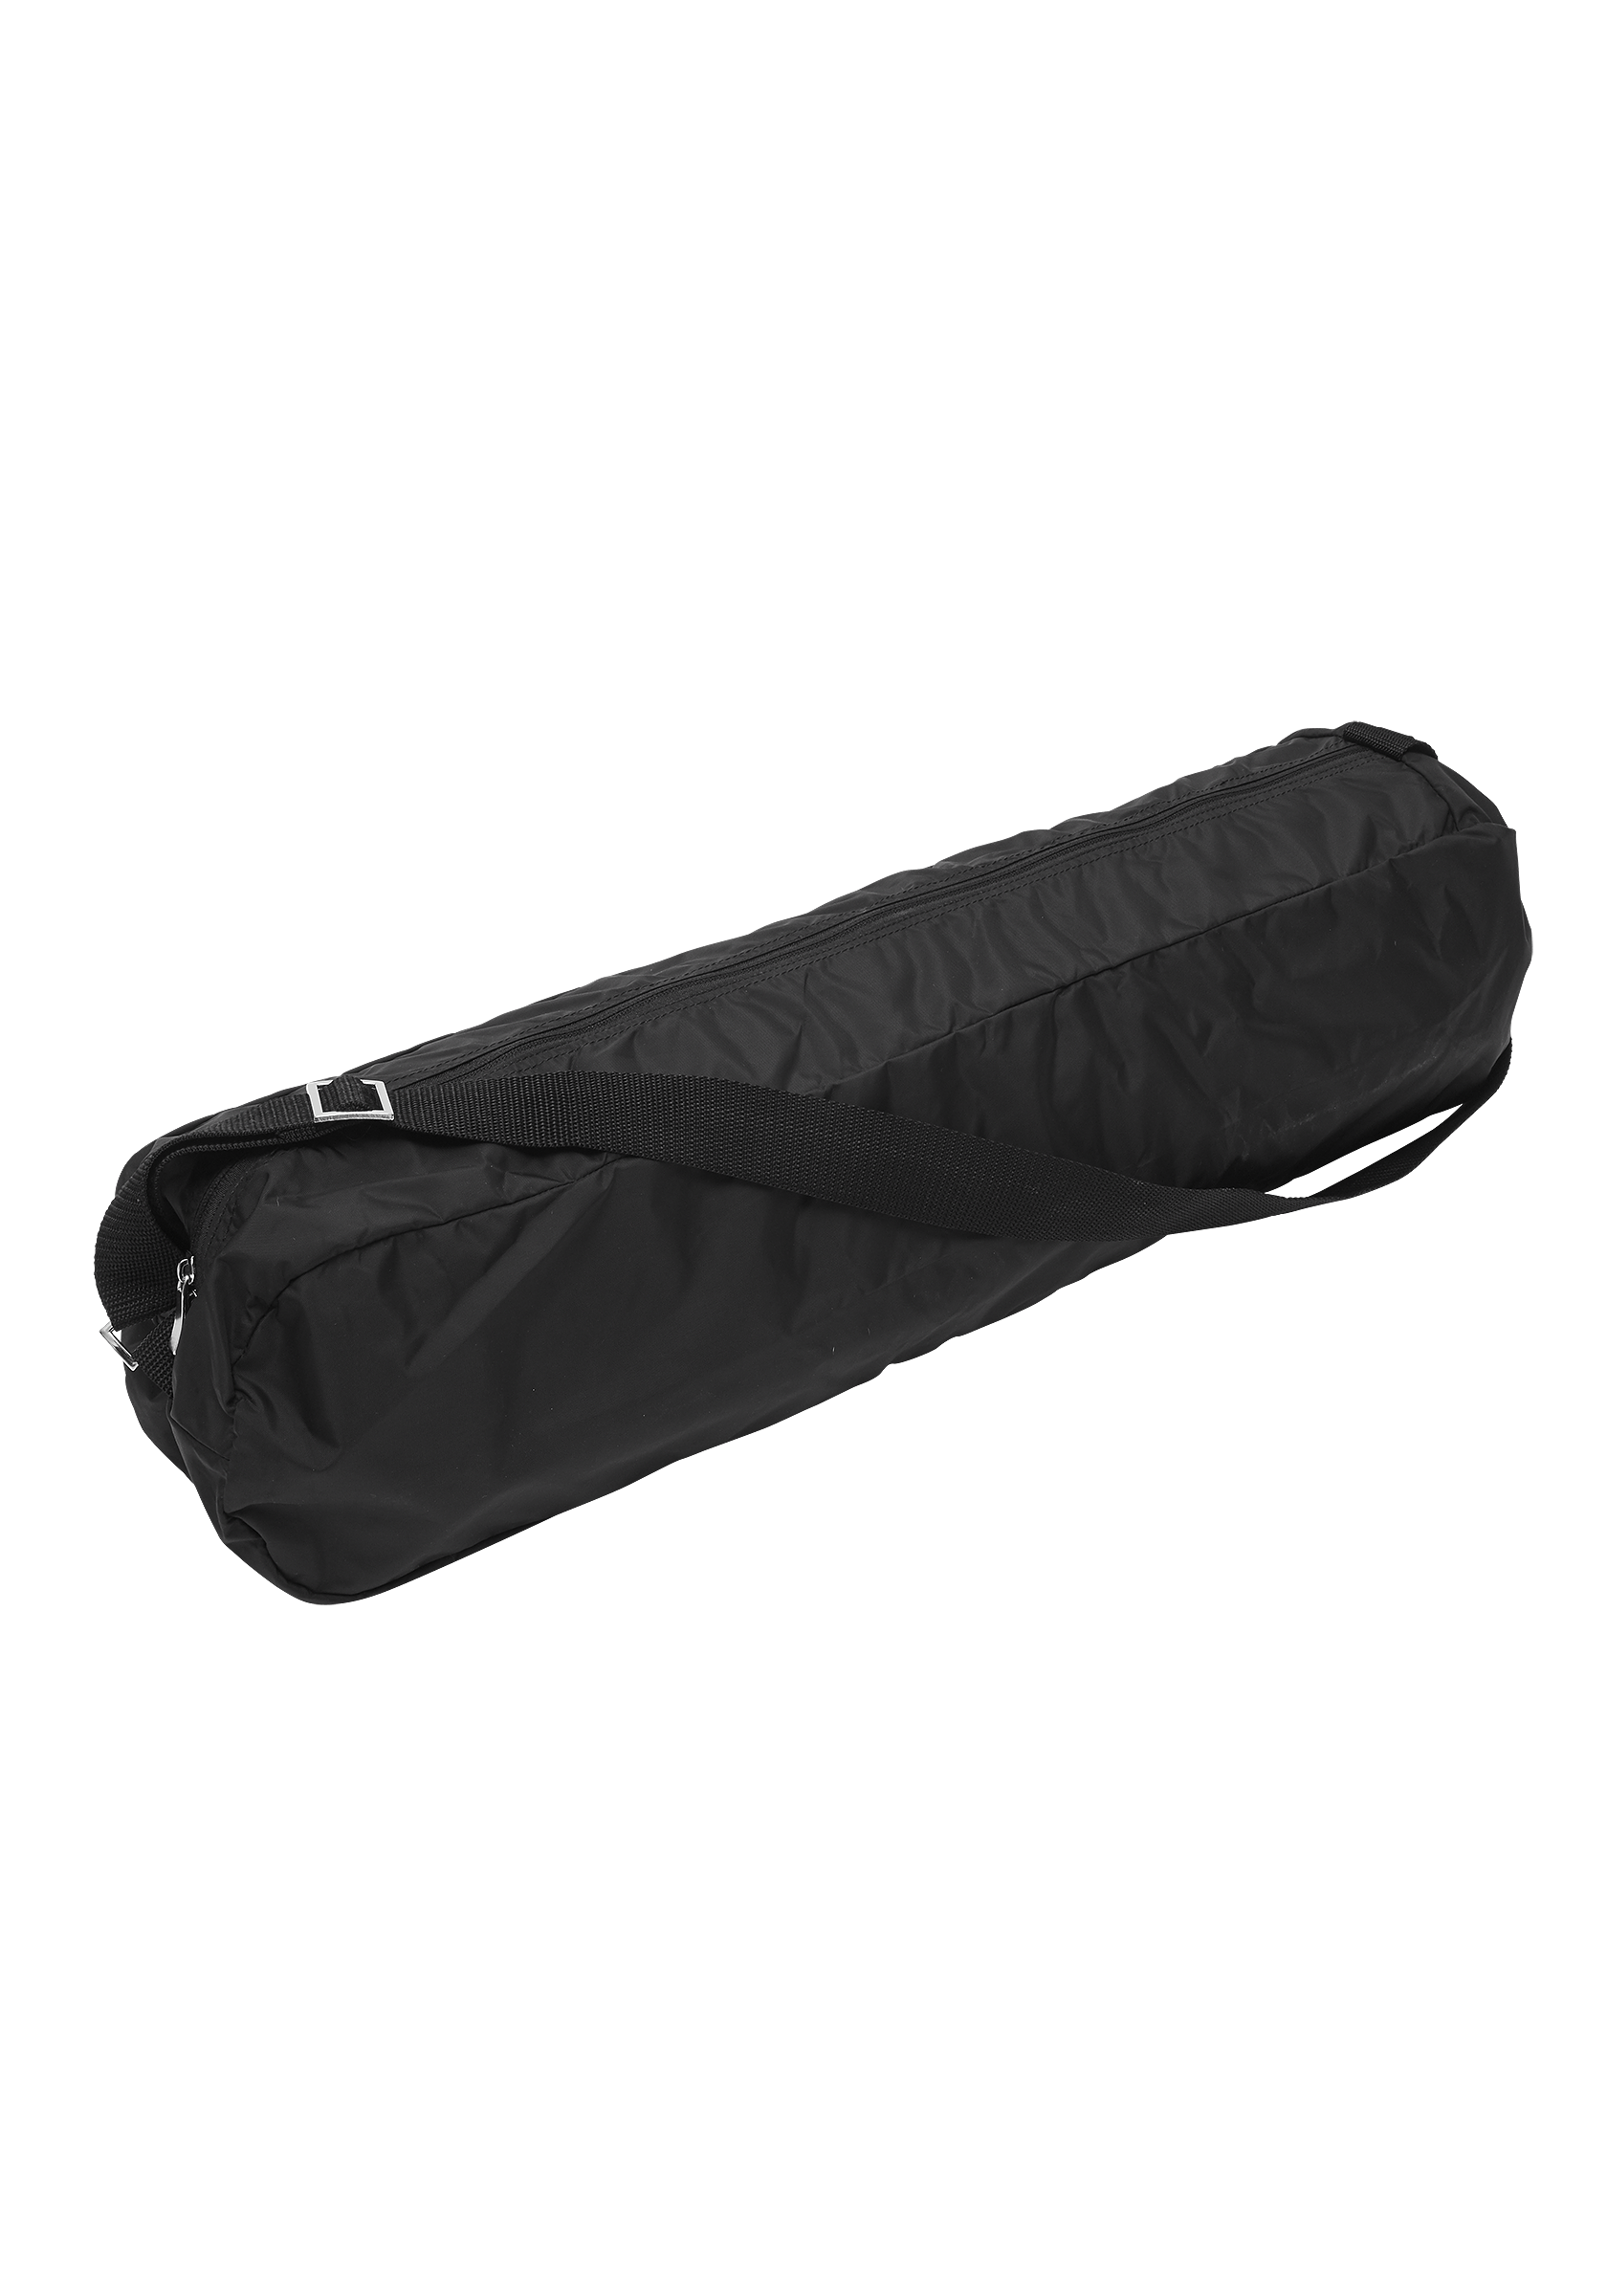 Yoga mat bag - Black